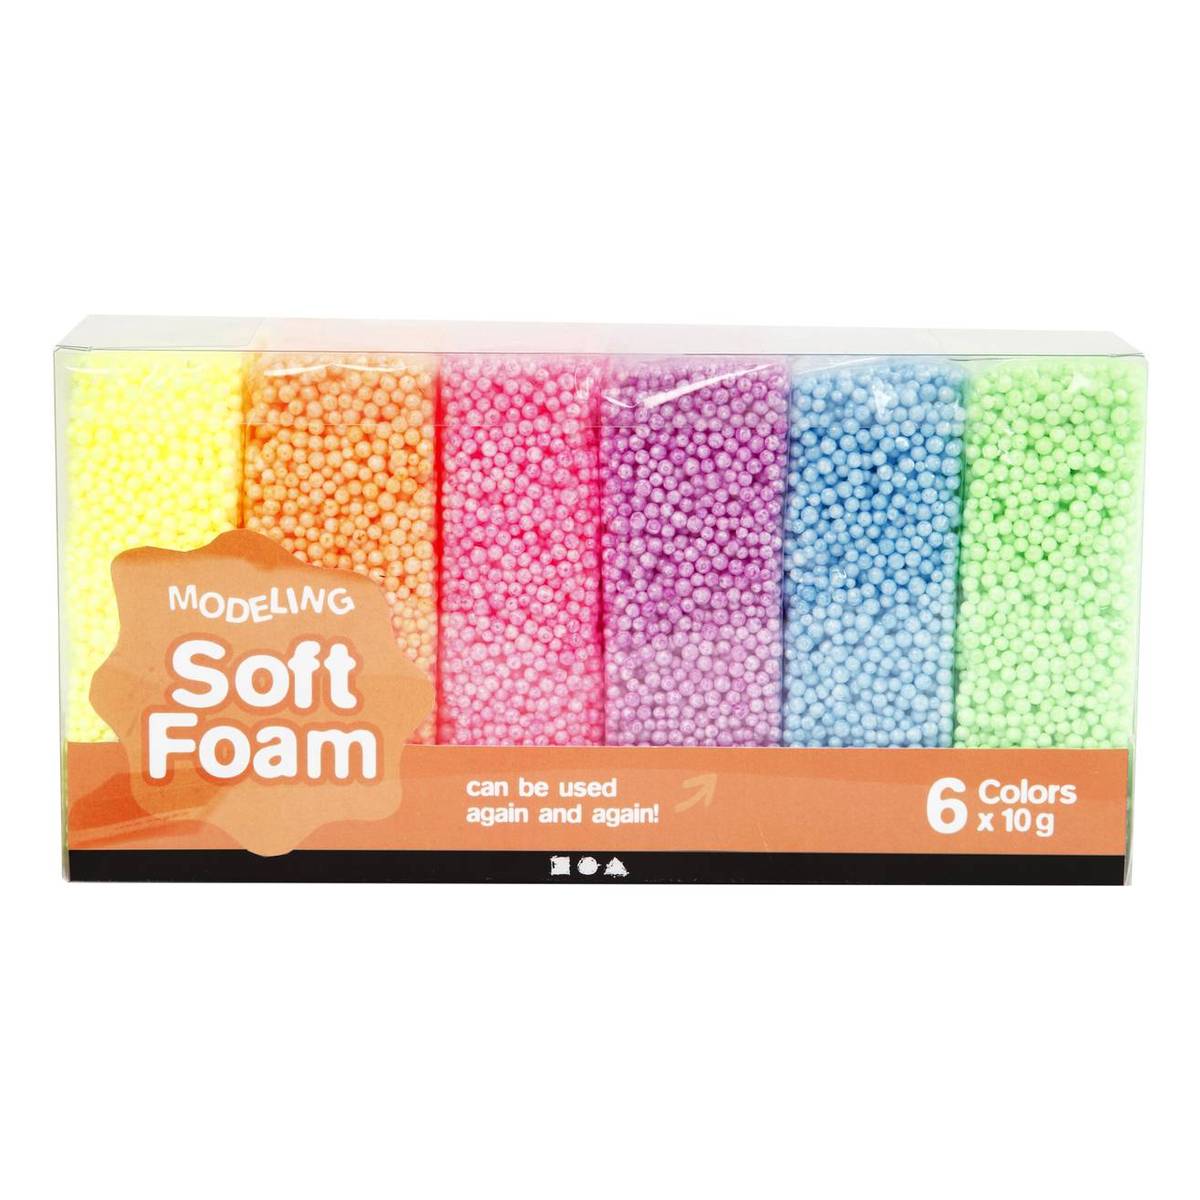 Verdorde Oh Uitrusten Modelling Soft Foam 10g 6 Pack | Hobbycraft